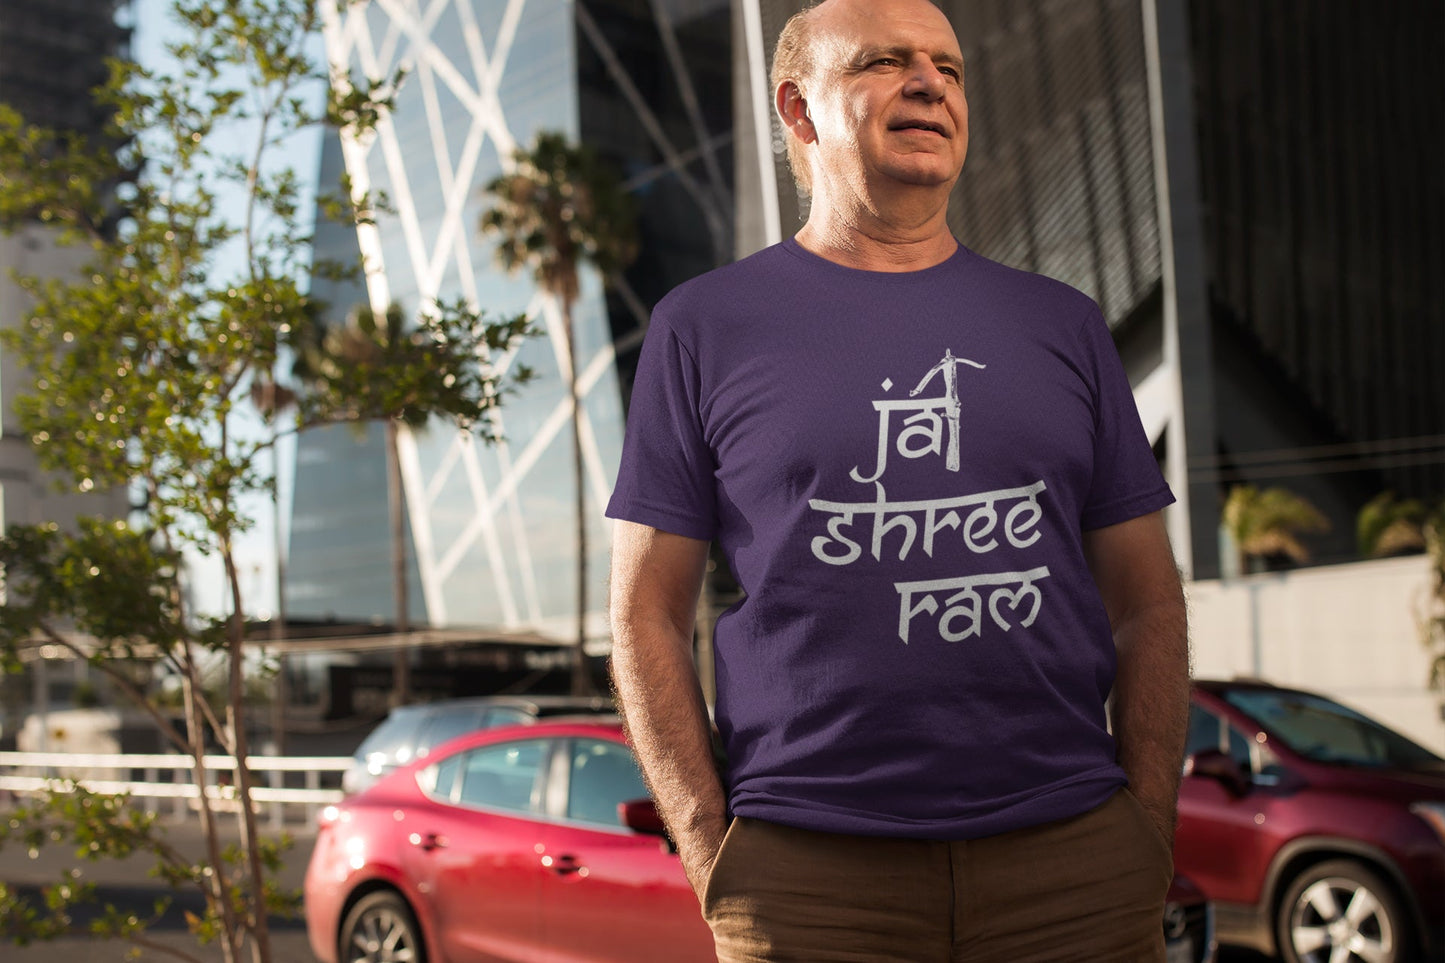 Summert T-Shirt für Männer (Jai Shree Ram)